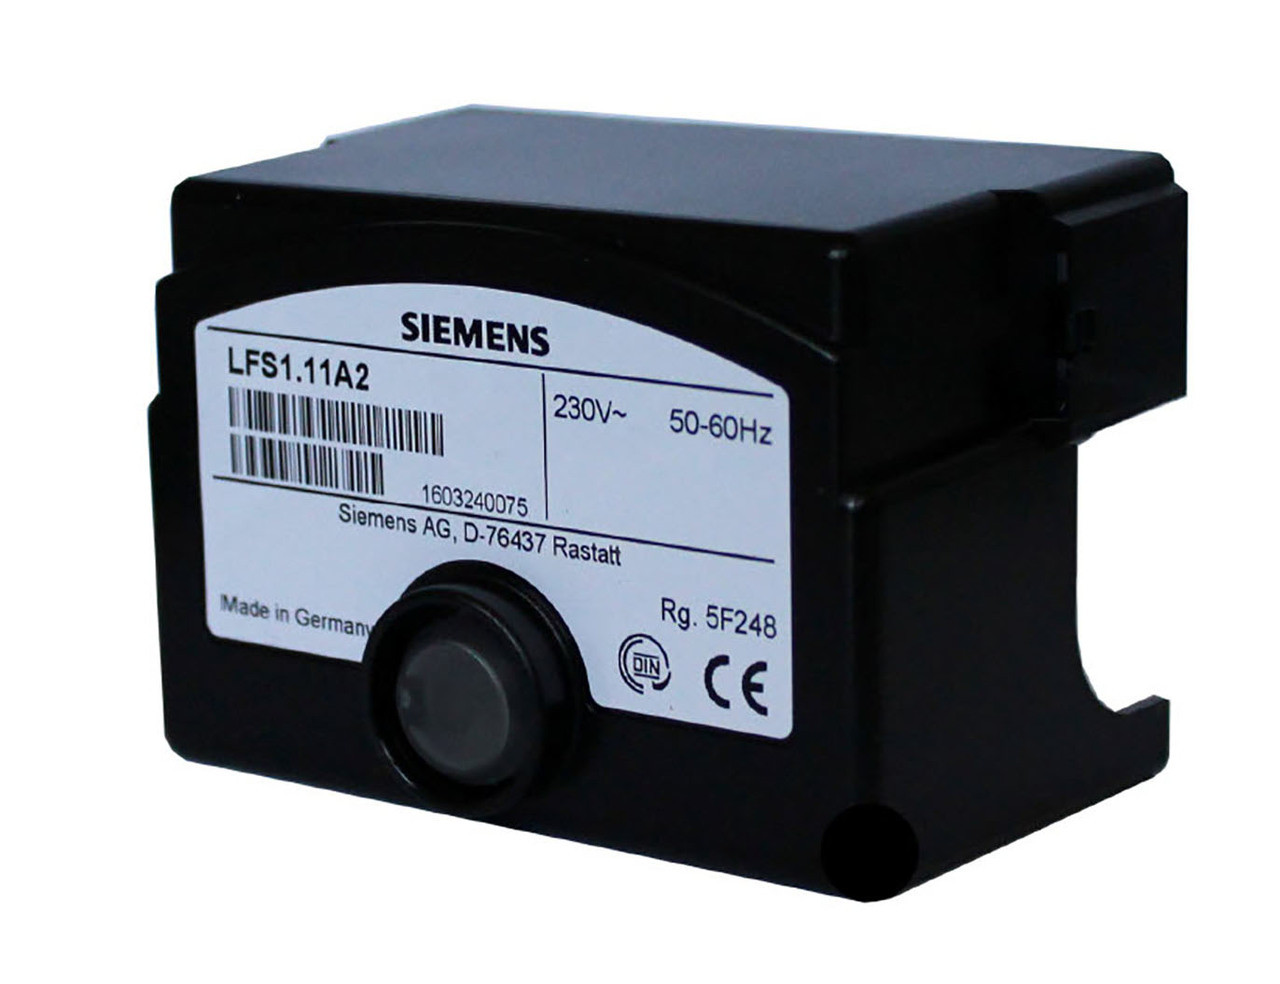 Siemens LFS1.11A2, Flame safeguard